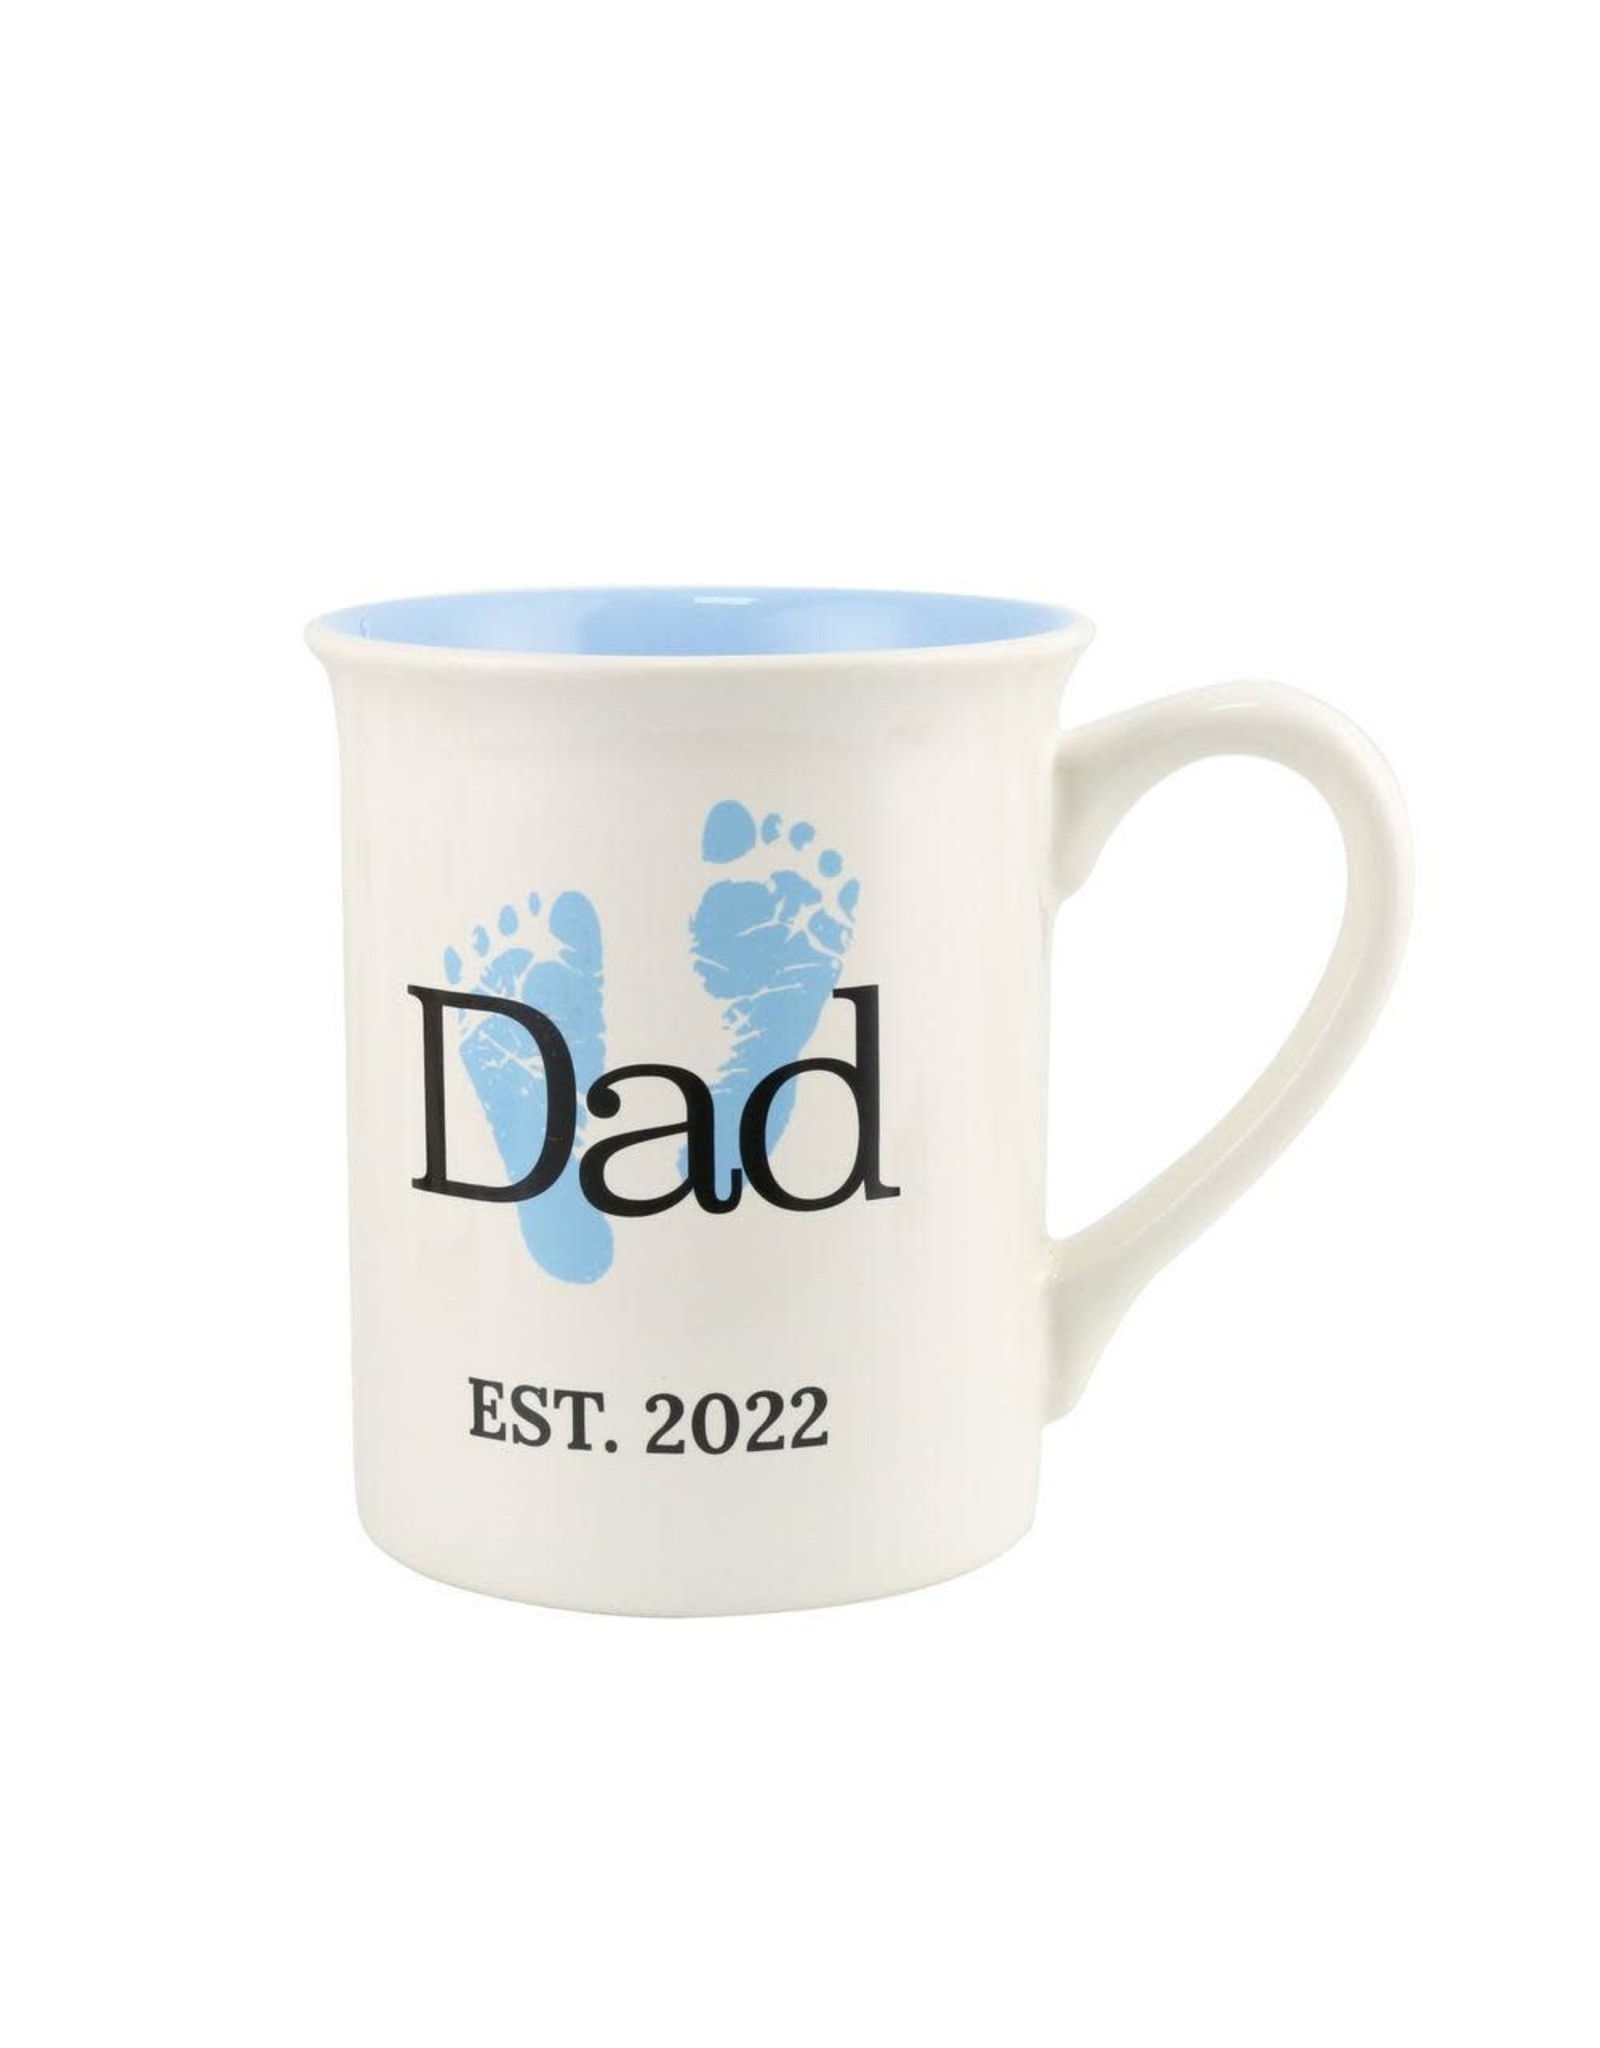 Enesco Dad Est. 2022 Mug